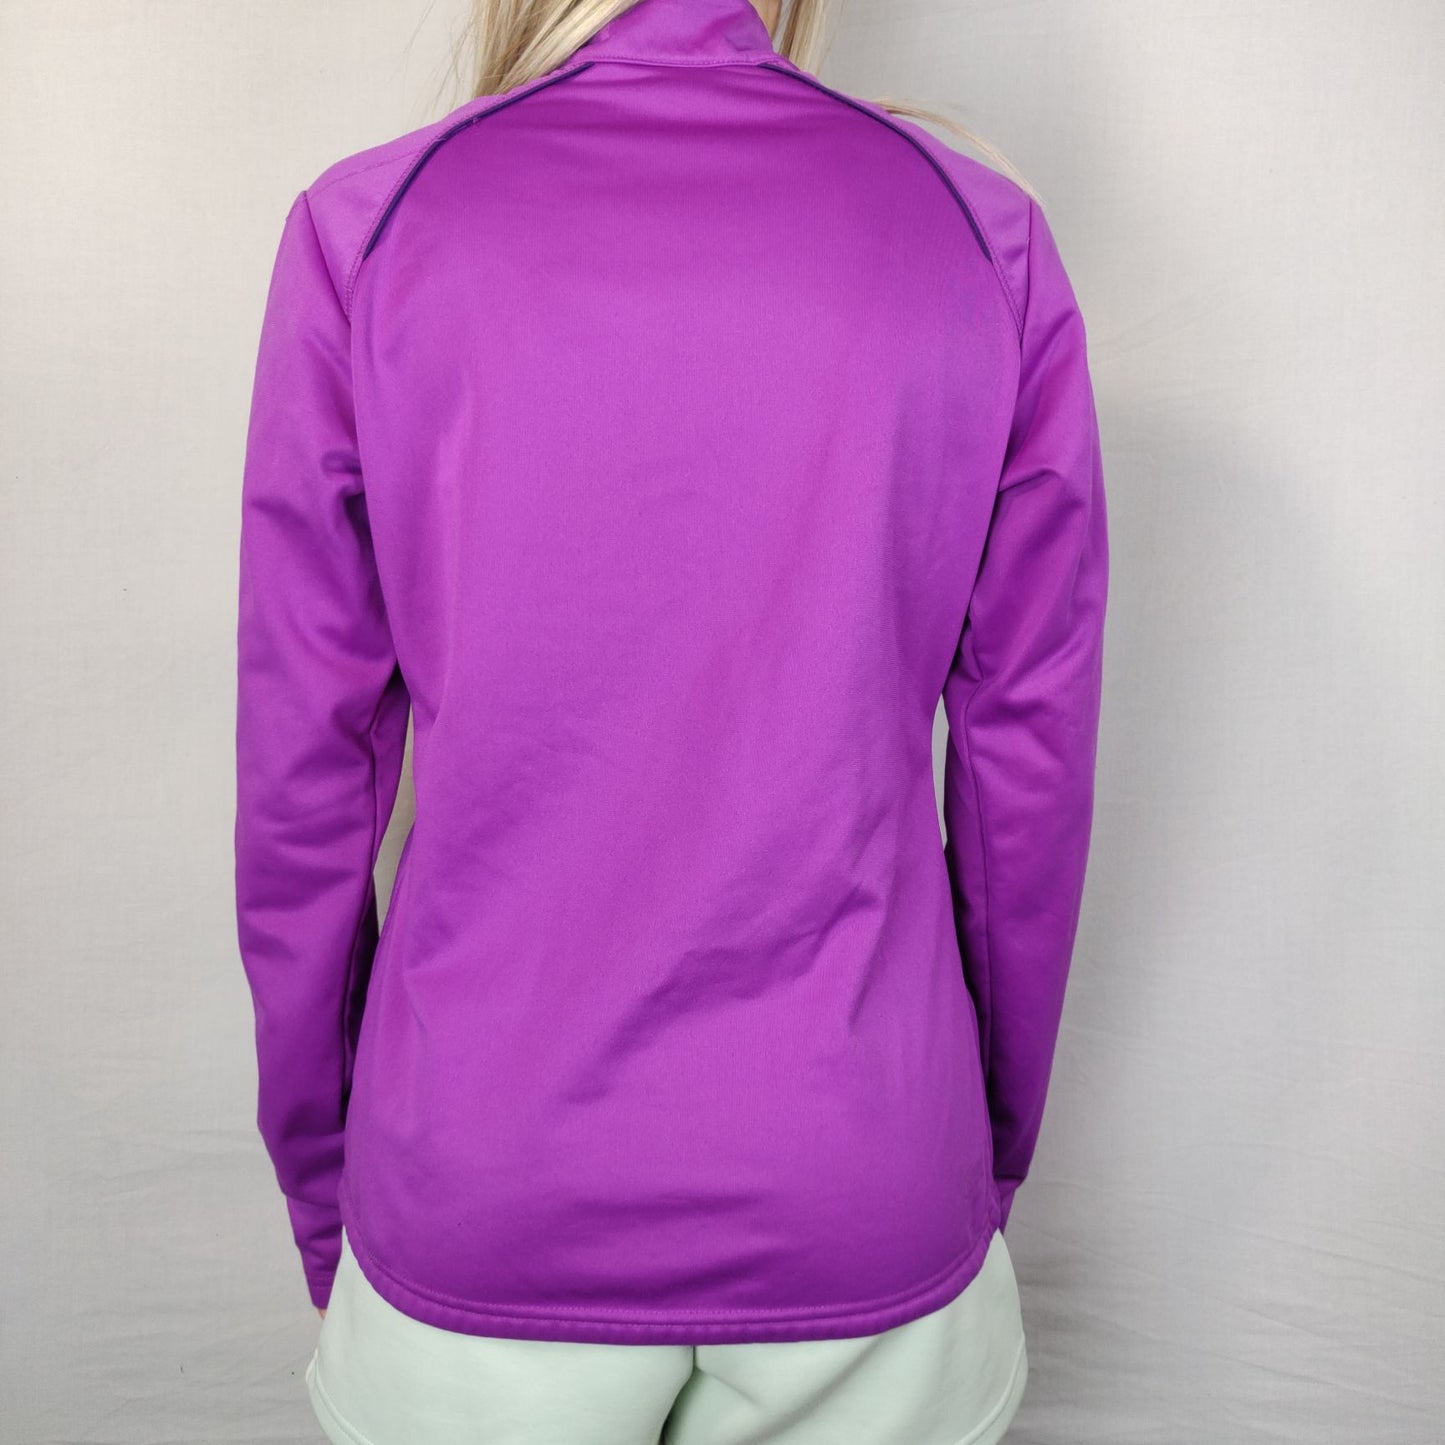 Pro Touch Purple Sweatshirt 1/4 Zip Women Size UK 10